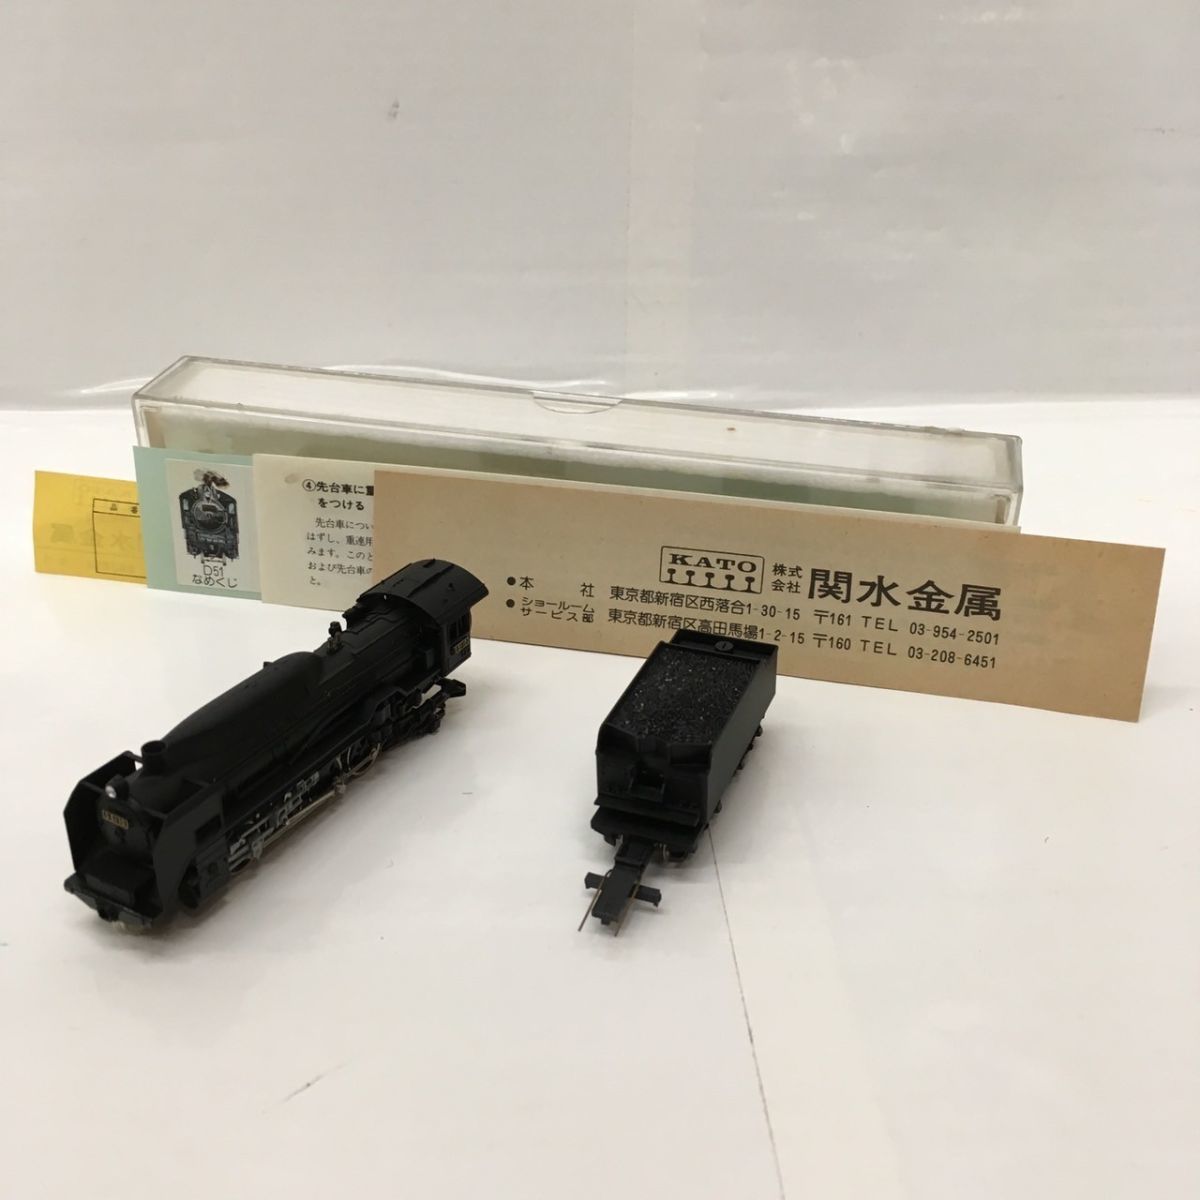 W217-C6-236◎KATO カトー Nゲージ 関水金属 D51 なめくじ 鉄道模型